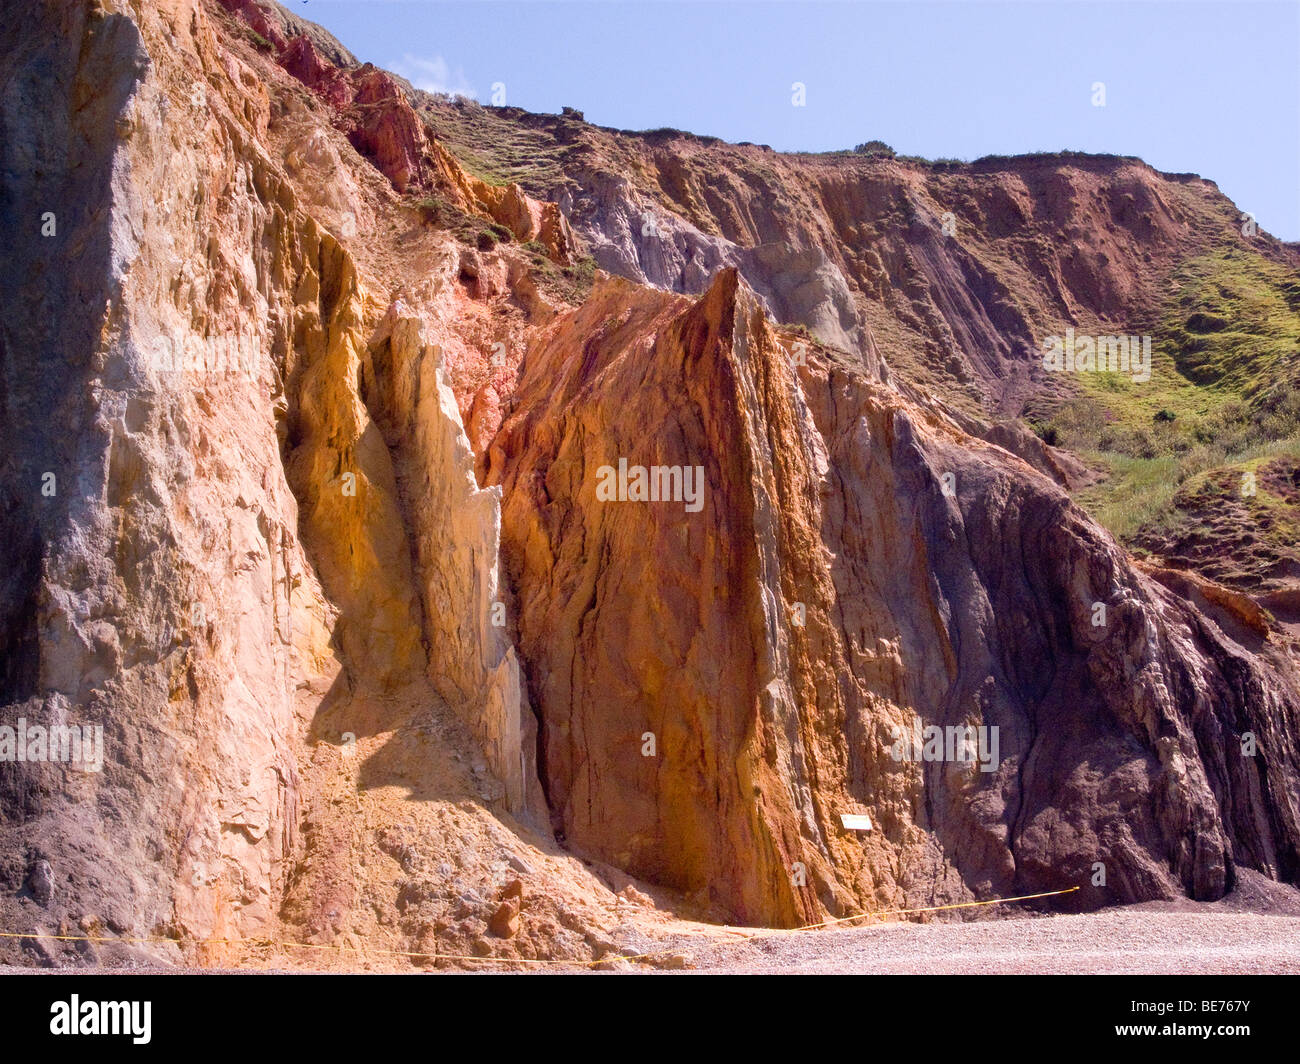 Alum Bay arena coloreada de color naranja cálido de arenisca de OIA acantilado rojo amarillo estratos bastante rockface roca recoger vacaciones Foto de stock